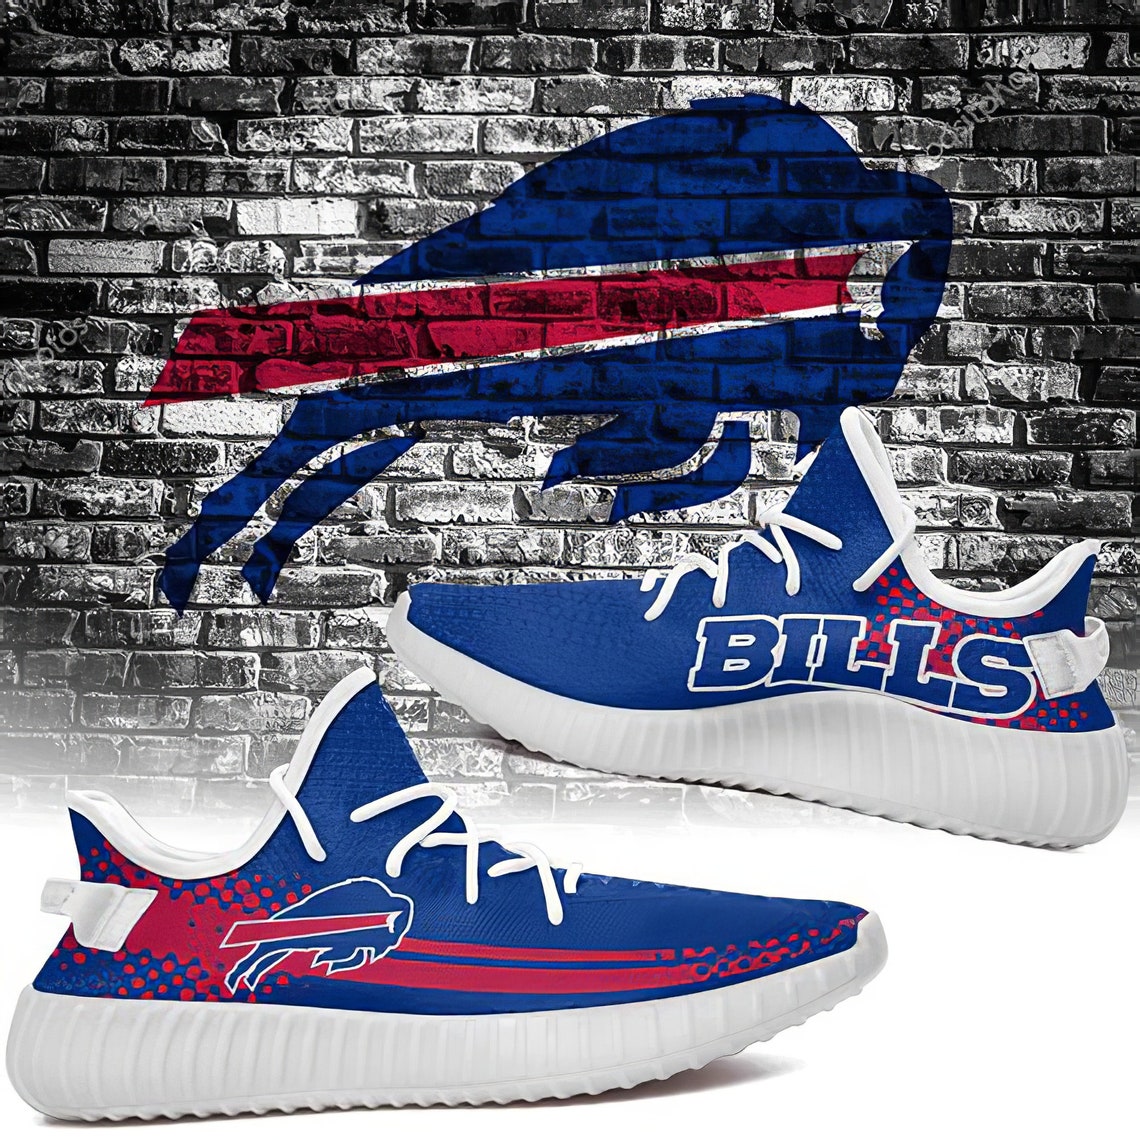 Buffalo Bills Nfl Sport Teams Yeezy Sneakers Yeezy Boost 350 | Etsy